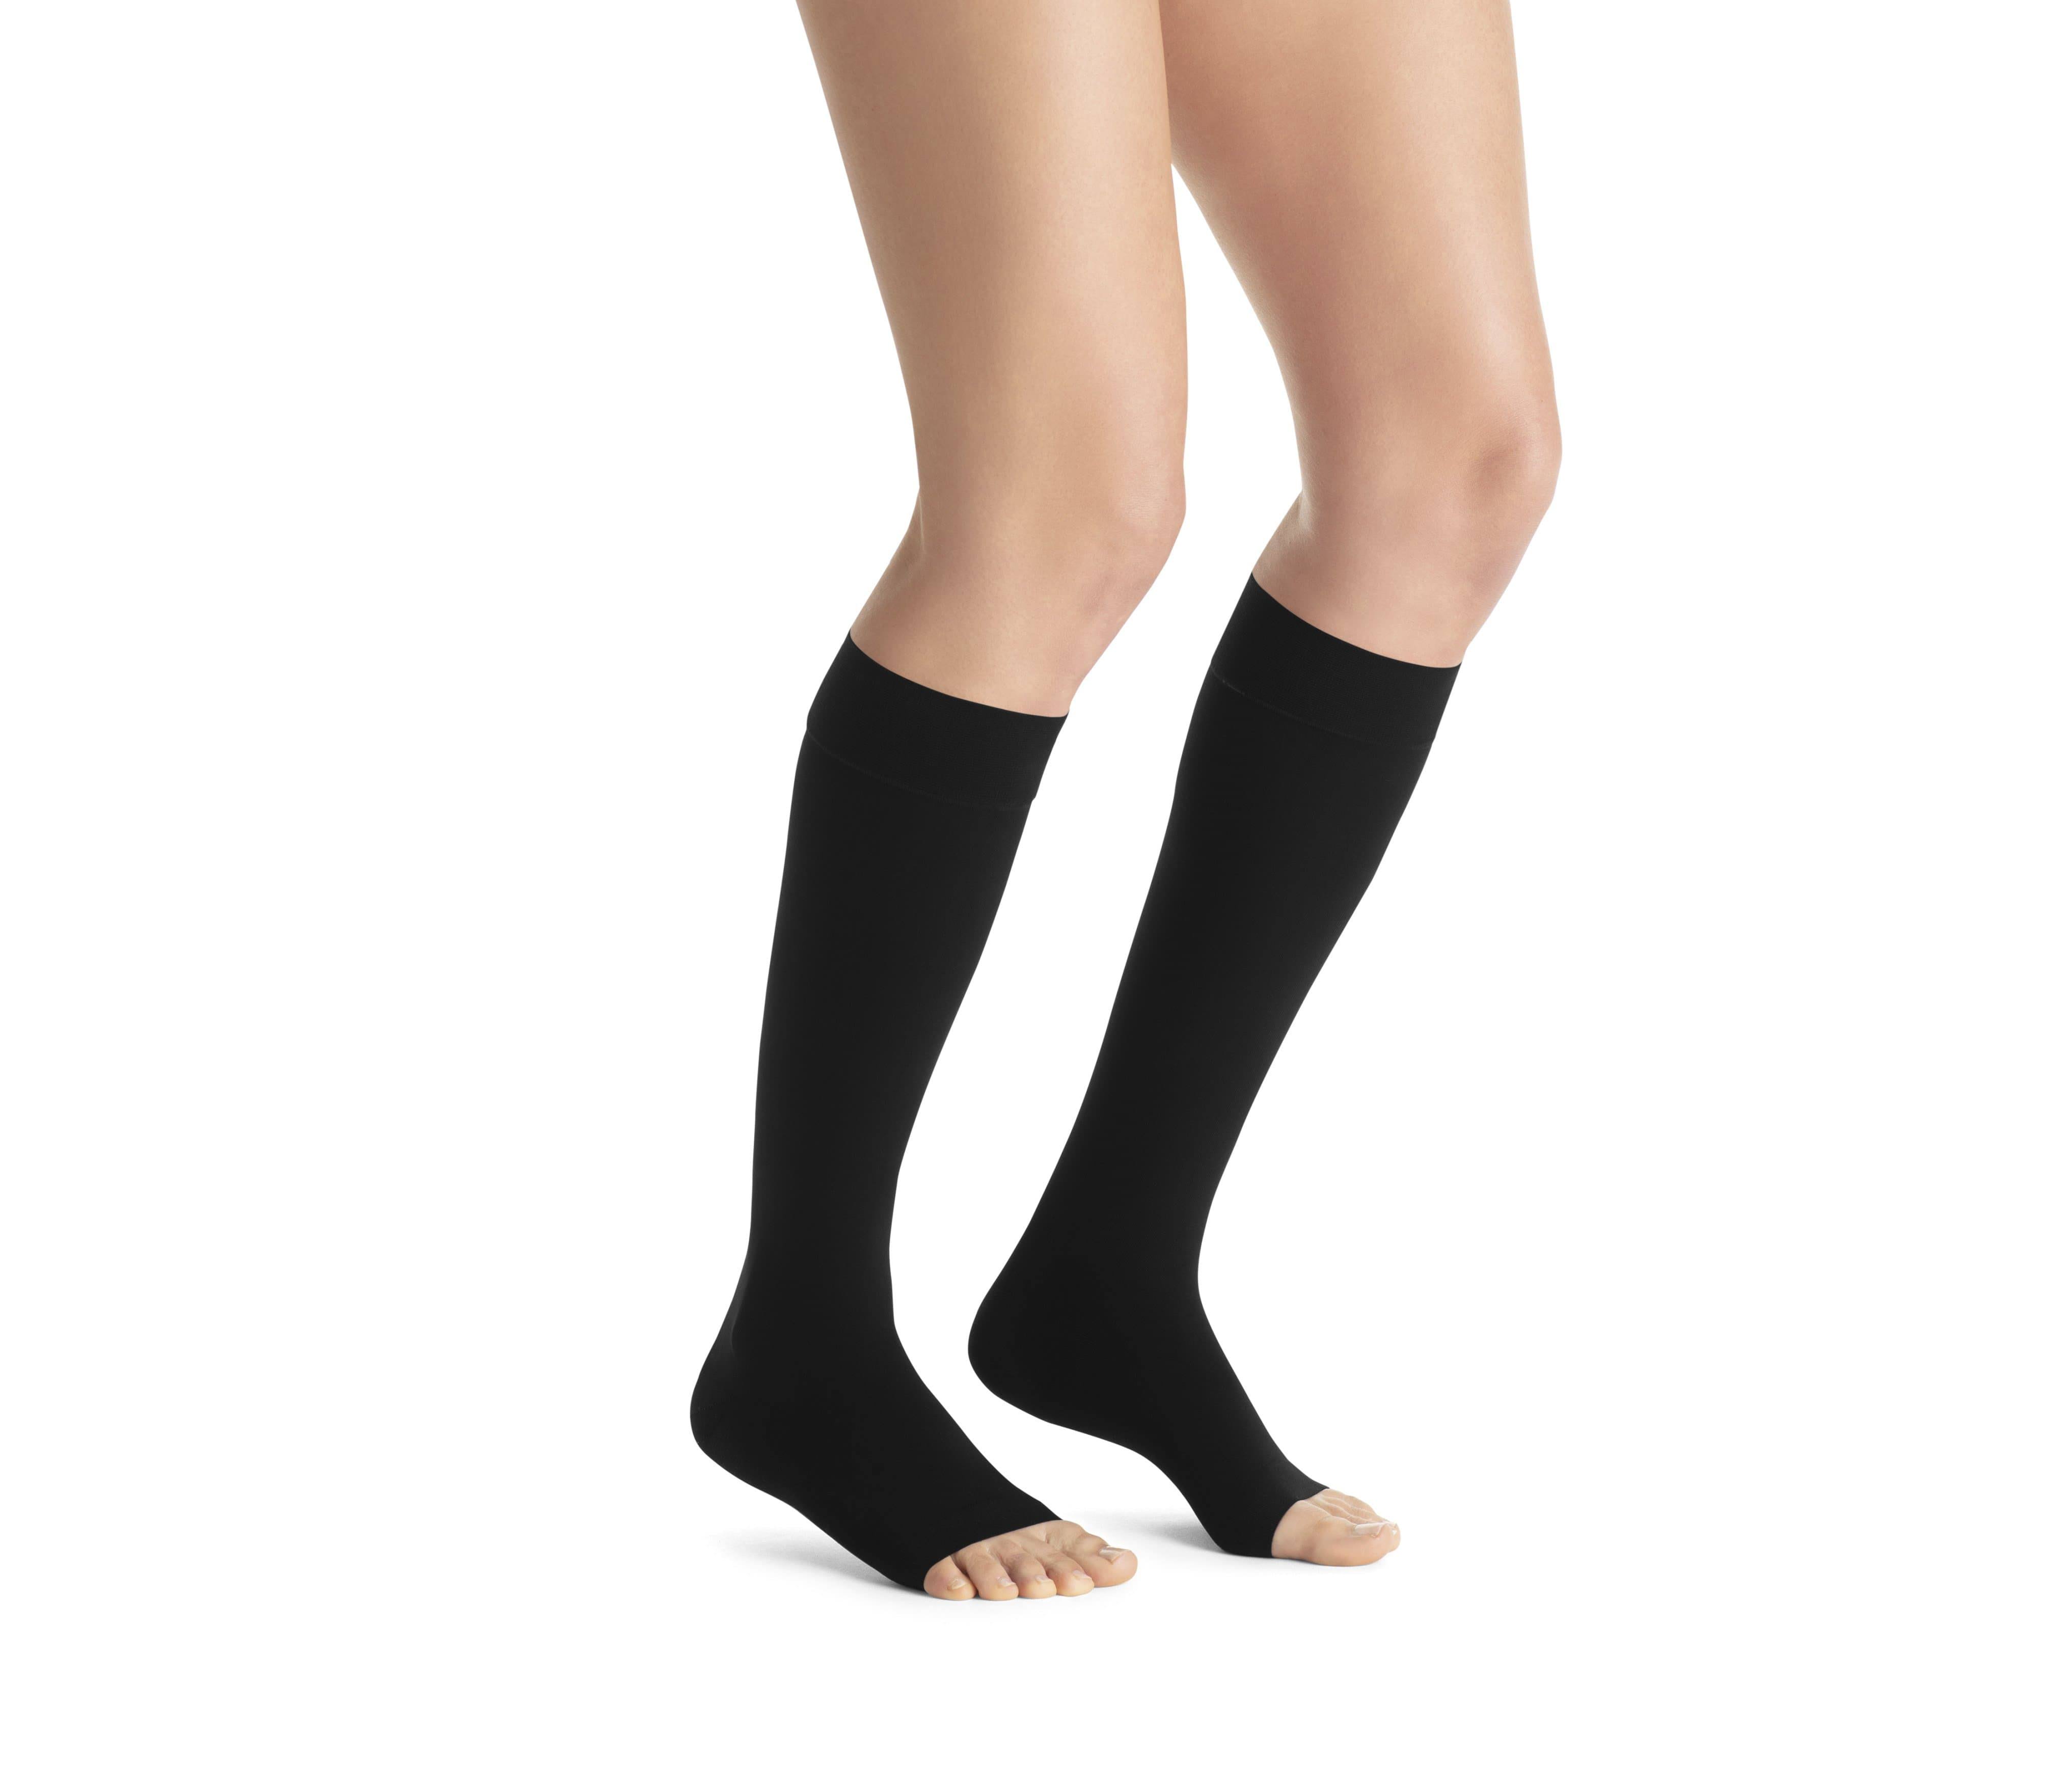 Jobst ActiveWear Knee-High Firm Compression Socks - Large, Black